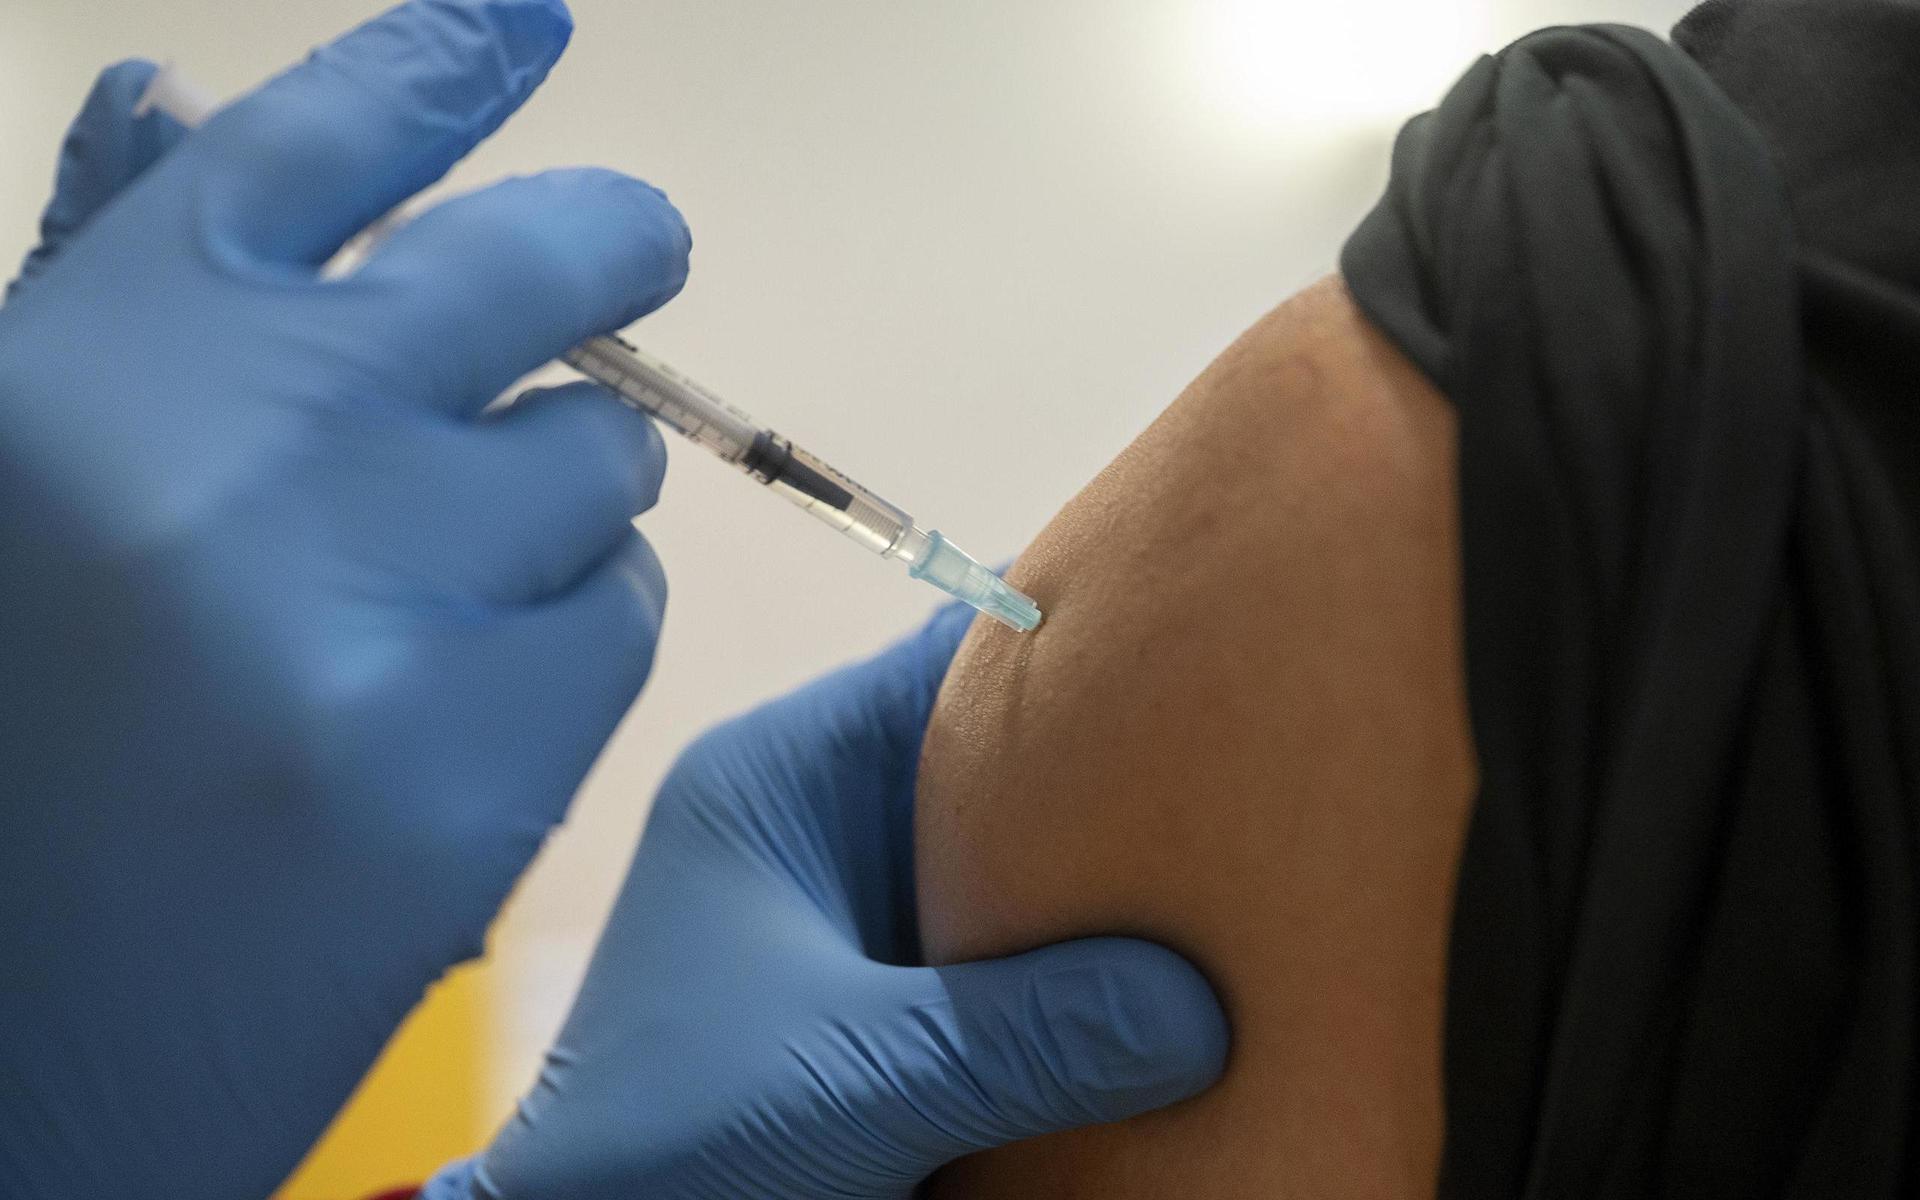 Vaccineringarna i Halland kommer att ta längre tid än planerat, bland annat till följd av att leveranserna av vaccin blivit mindre än vad som sagts tidigare.